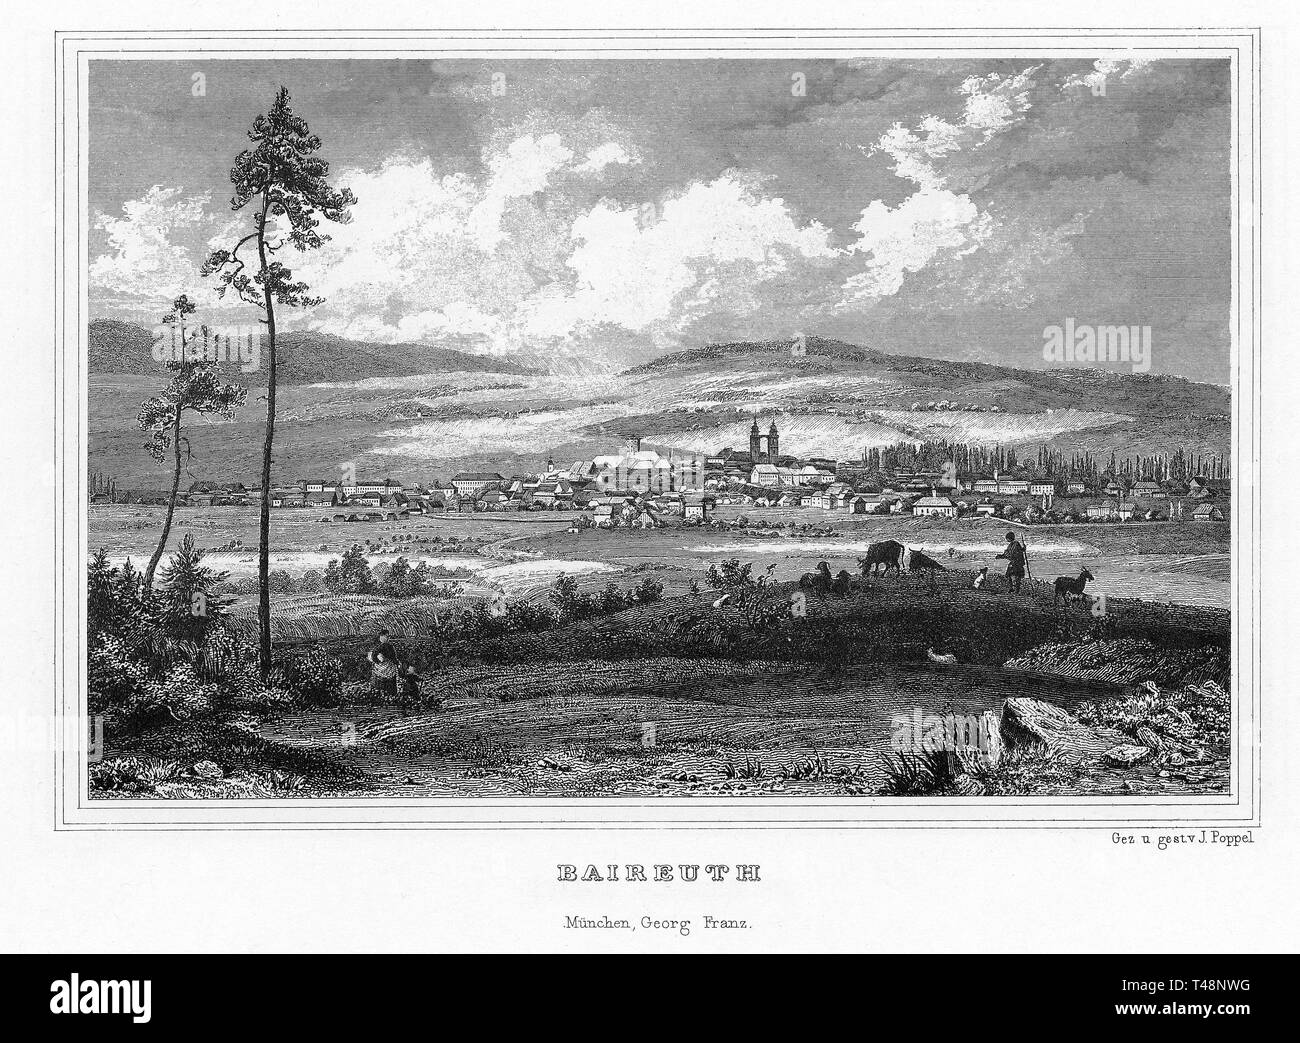 Bayreuth, Baireuth, Zeichnung und Stahlstich von J. Poppel, 1840-54, Königreich Bayern, Deutschland Stockfoto